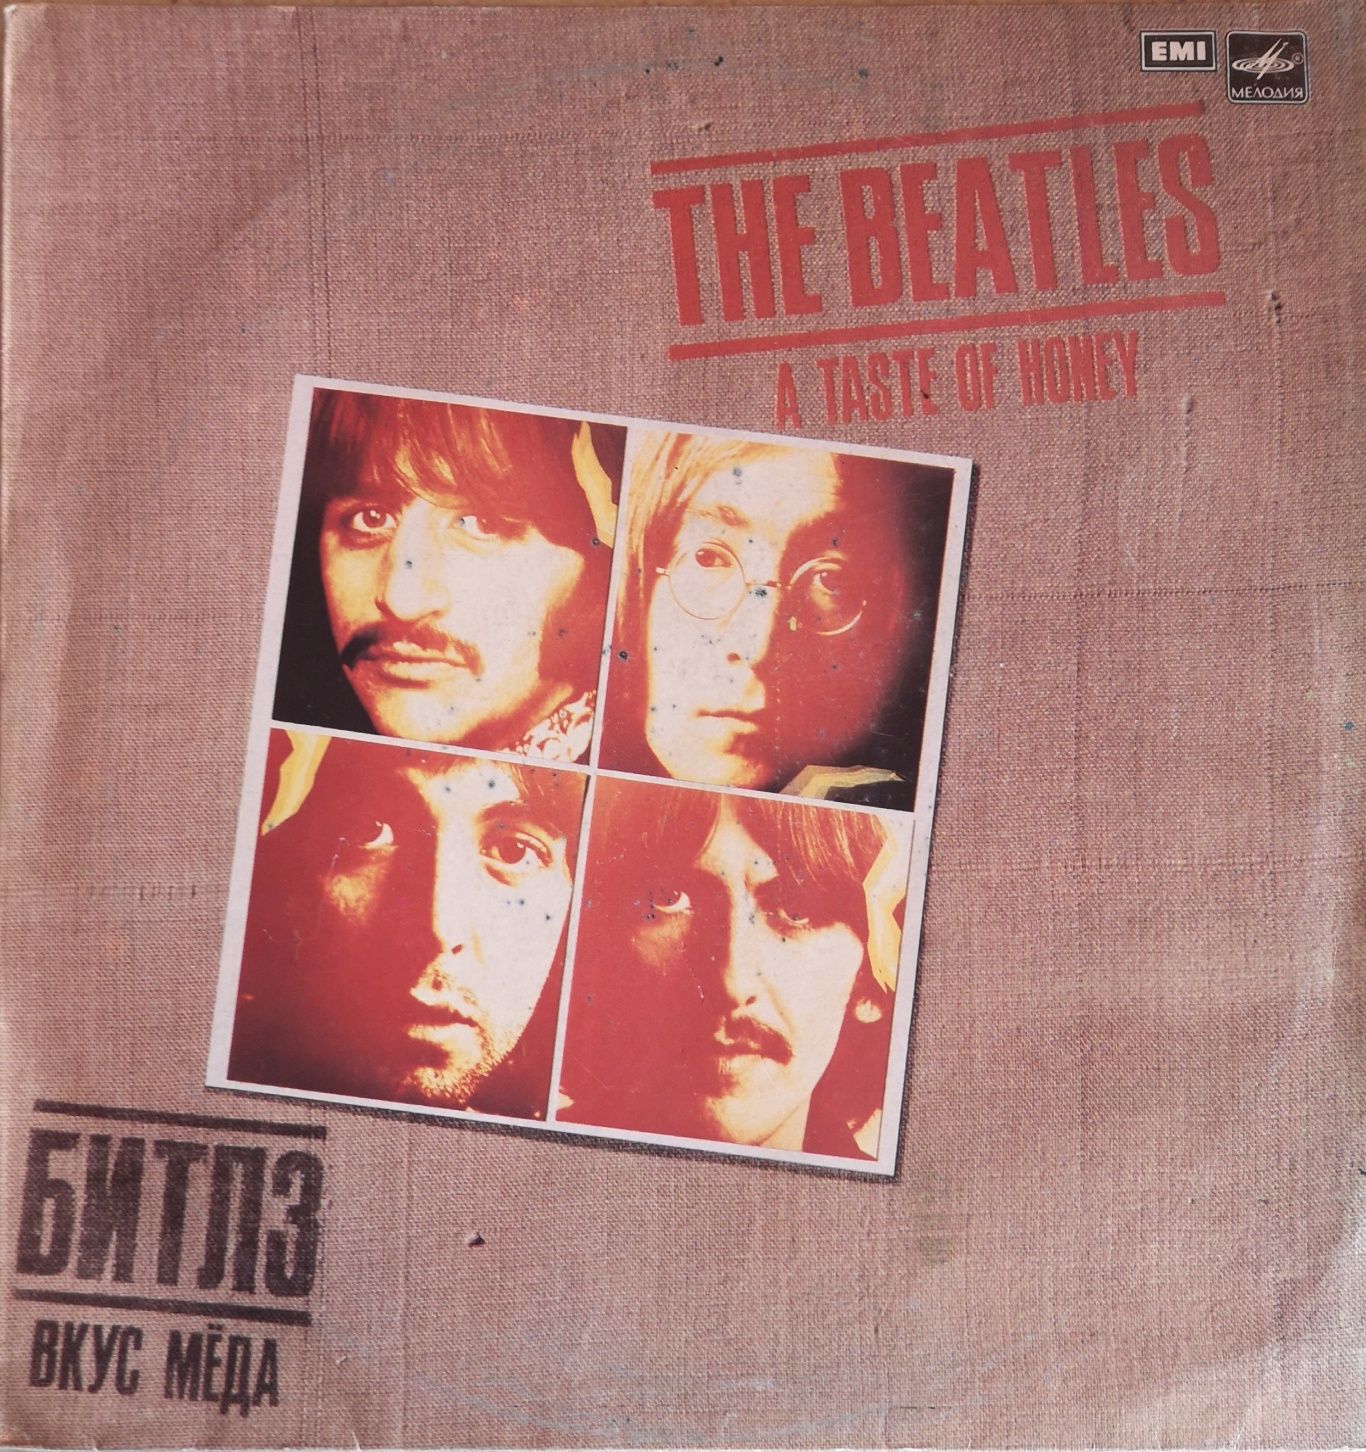 Płyta winylowa The Beatles A Taste of Honey